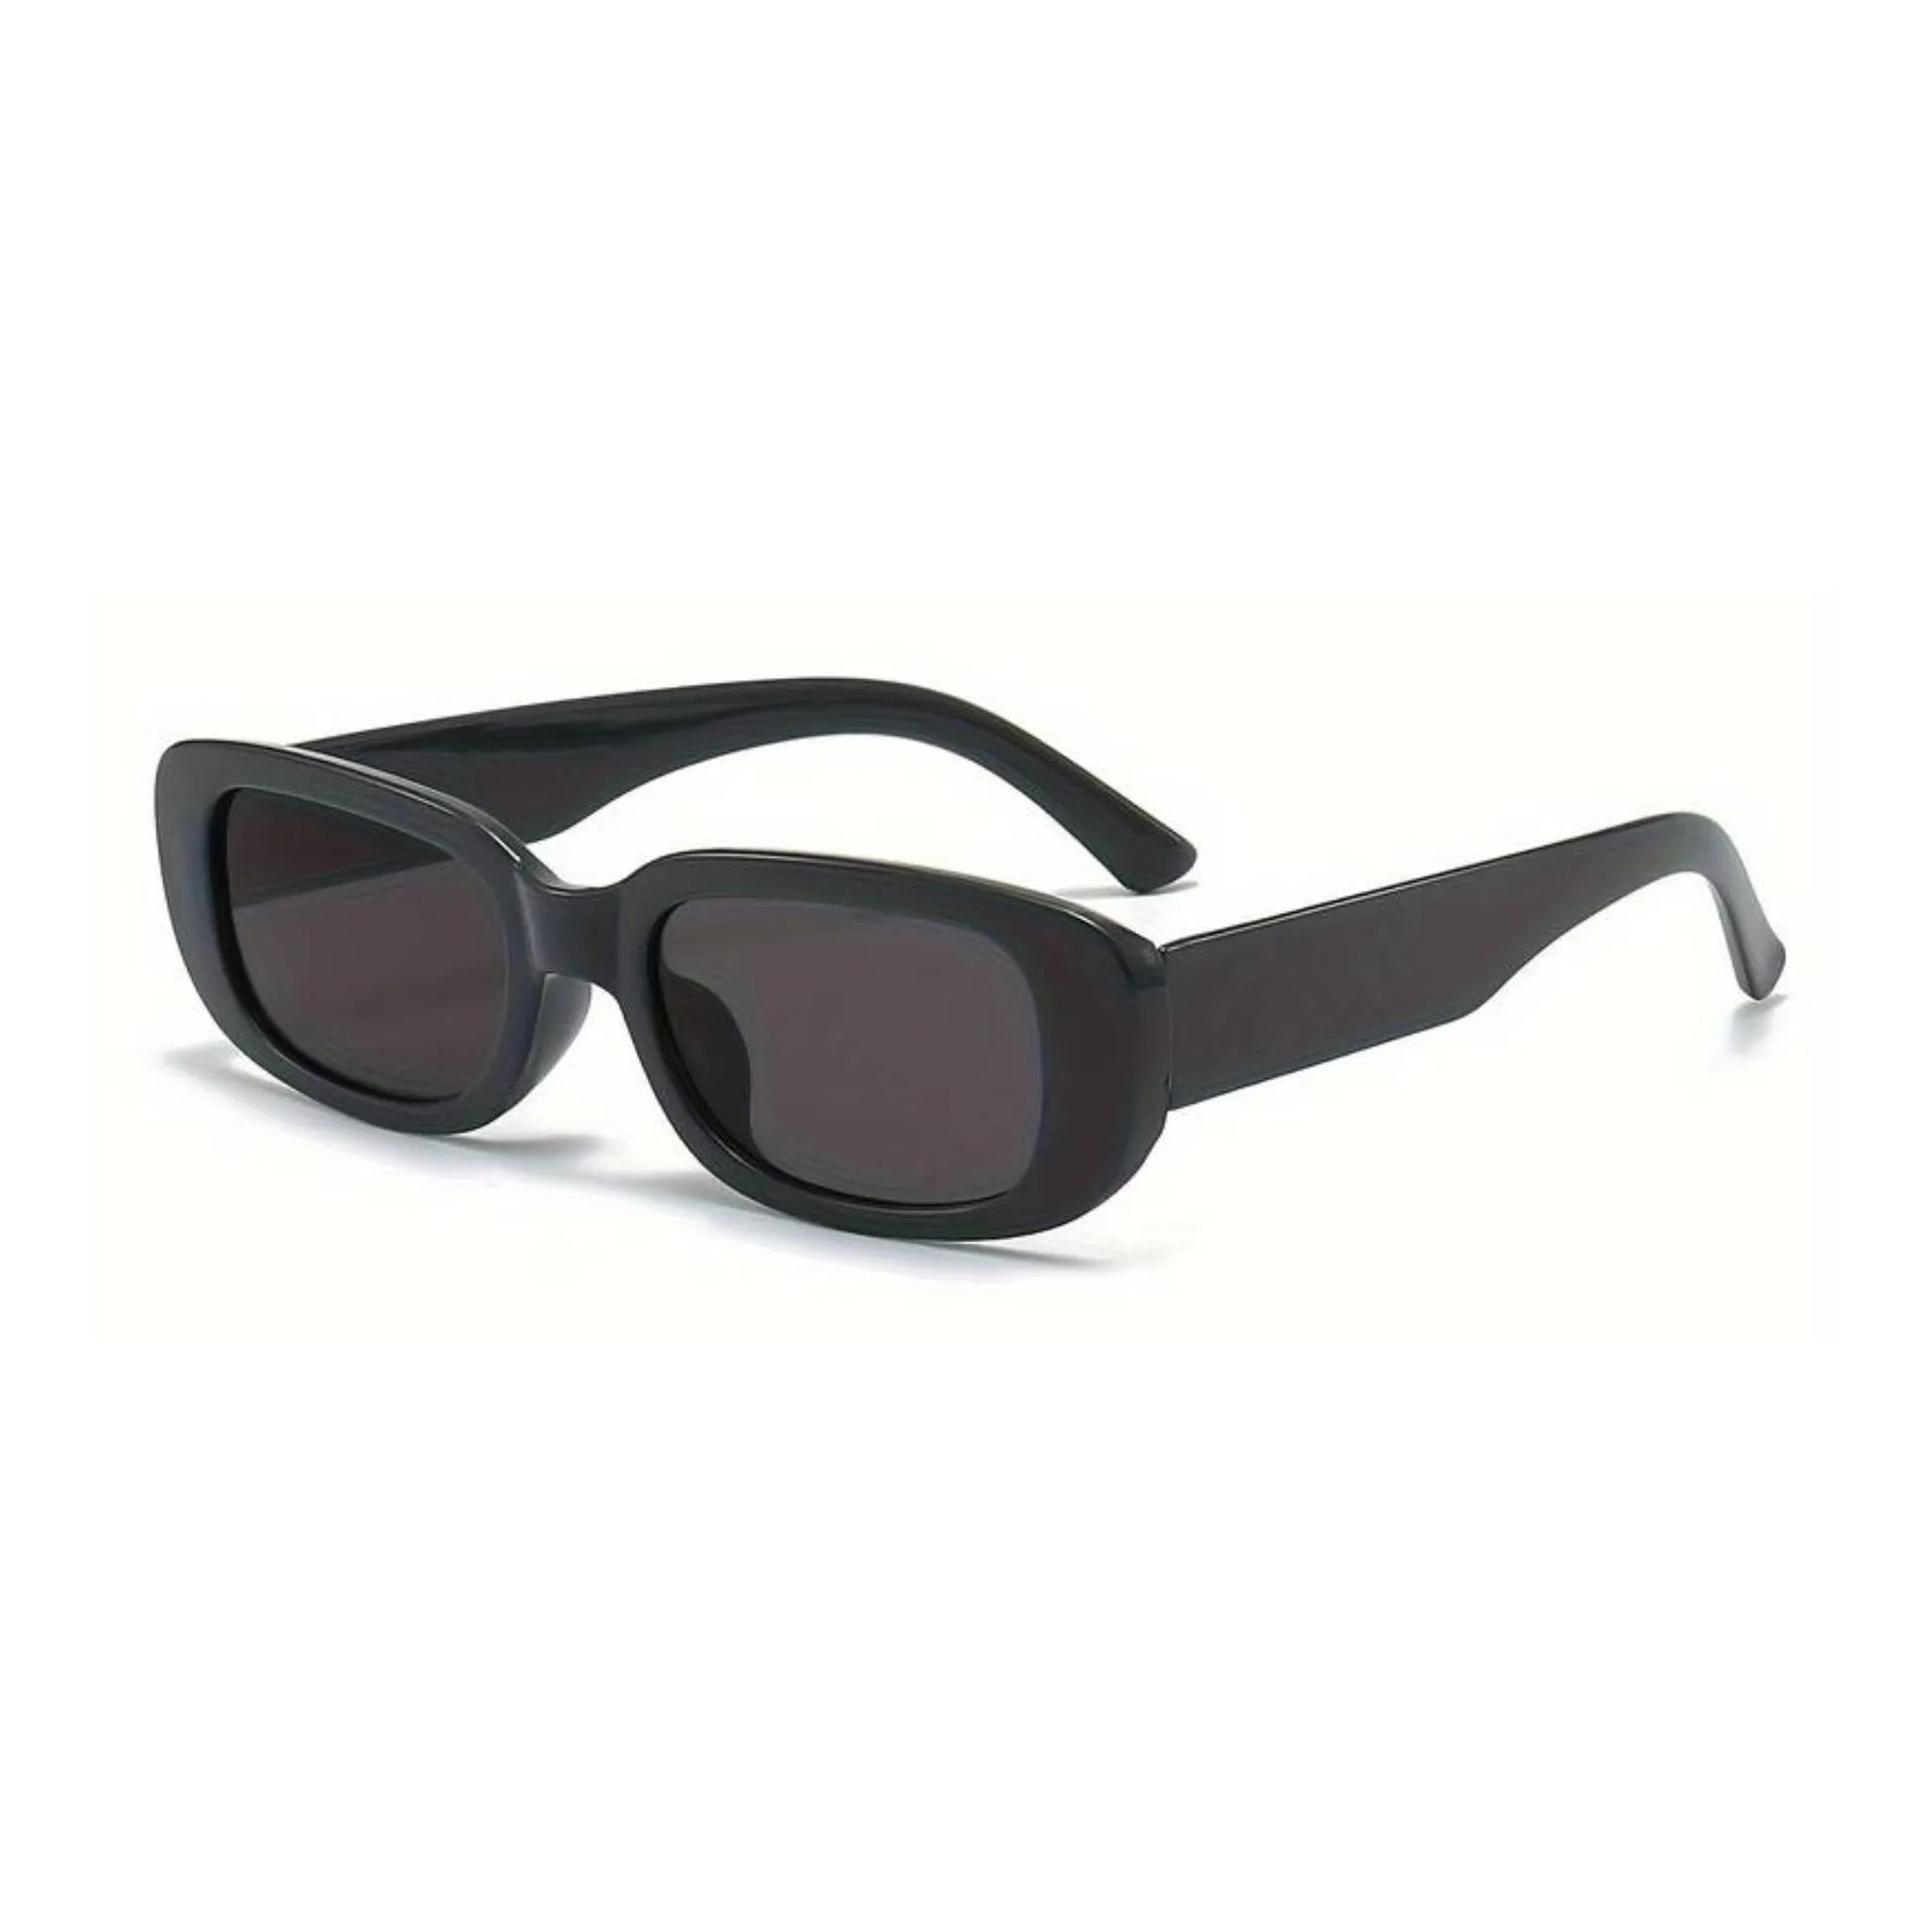 Οβάλ Γυαλιά ηλίου Kony της Exposure Sunglasses με προστασία UV400 σε μαύρο χρώμα σκελετού και μαύρο φακό. Πλάγια προβολή